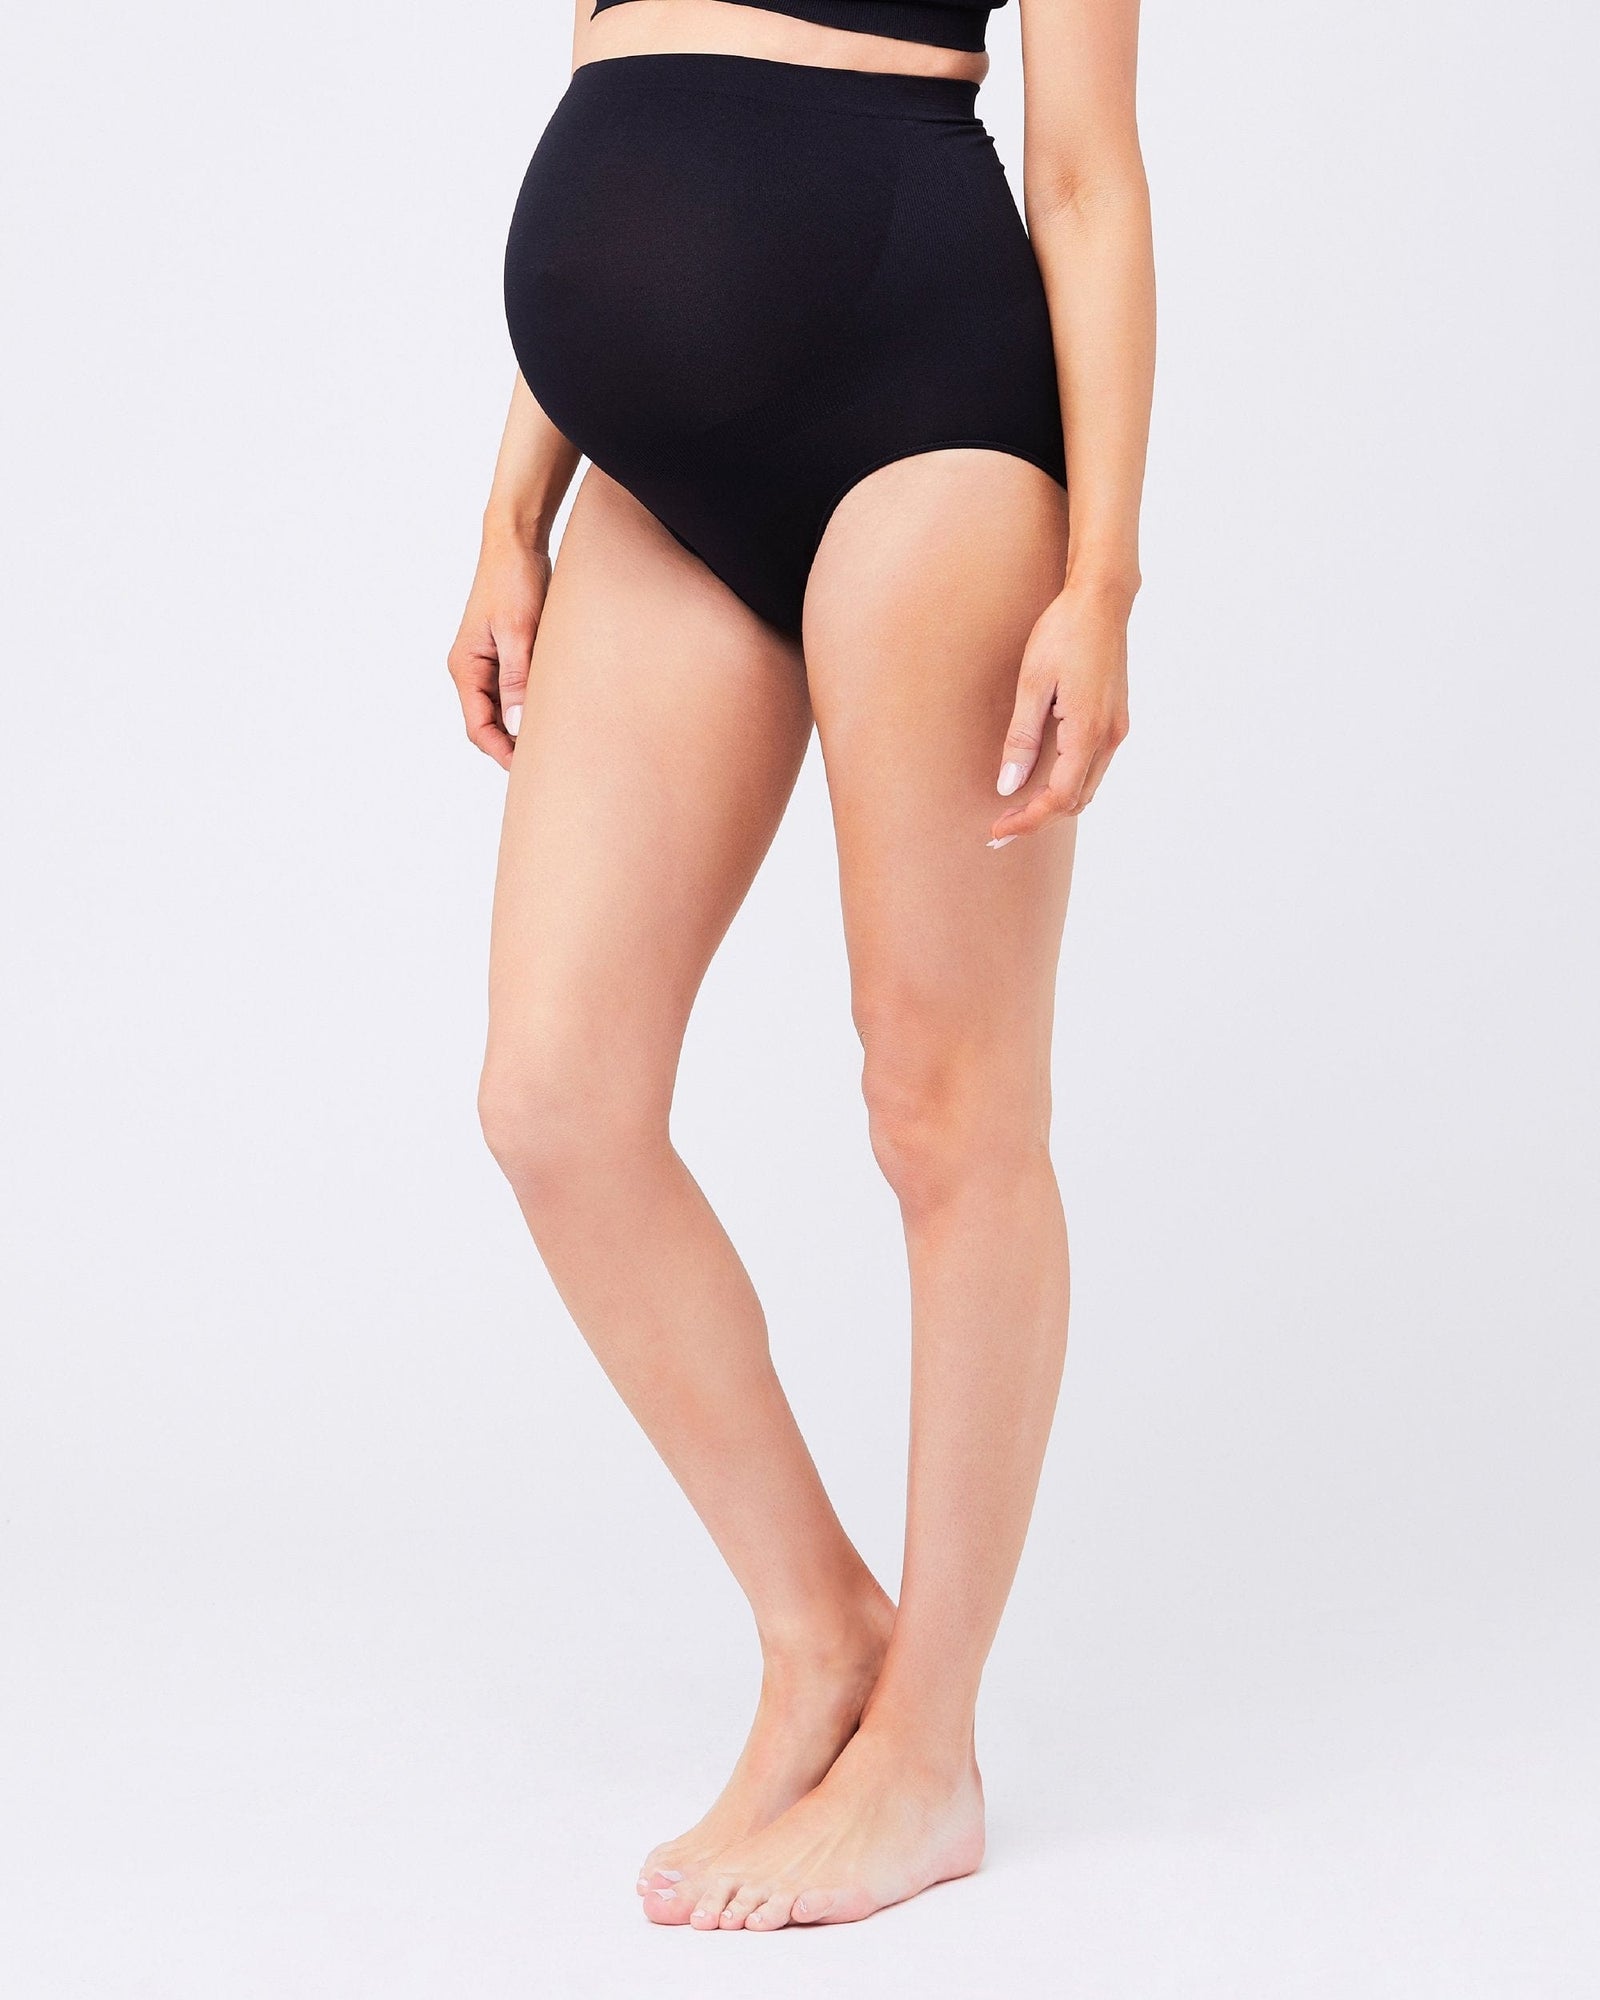 Pregnancy Underwear  Seamless Nursing Bras & Briefs - BABYGO®